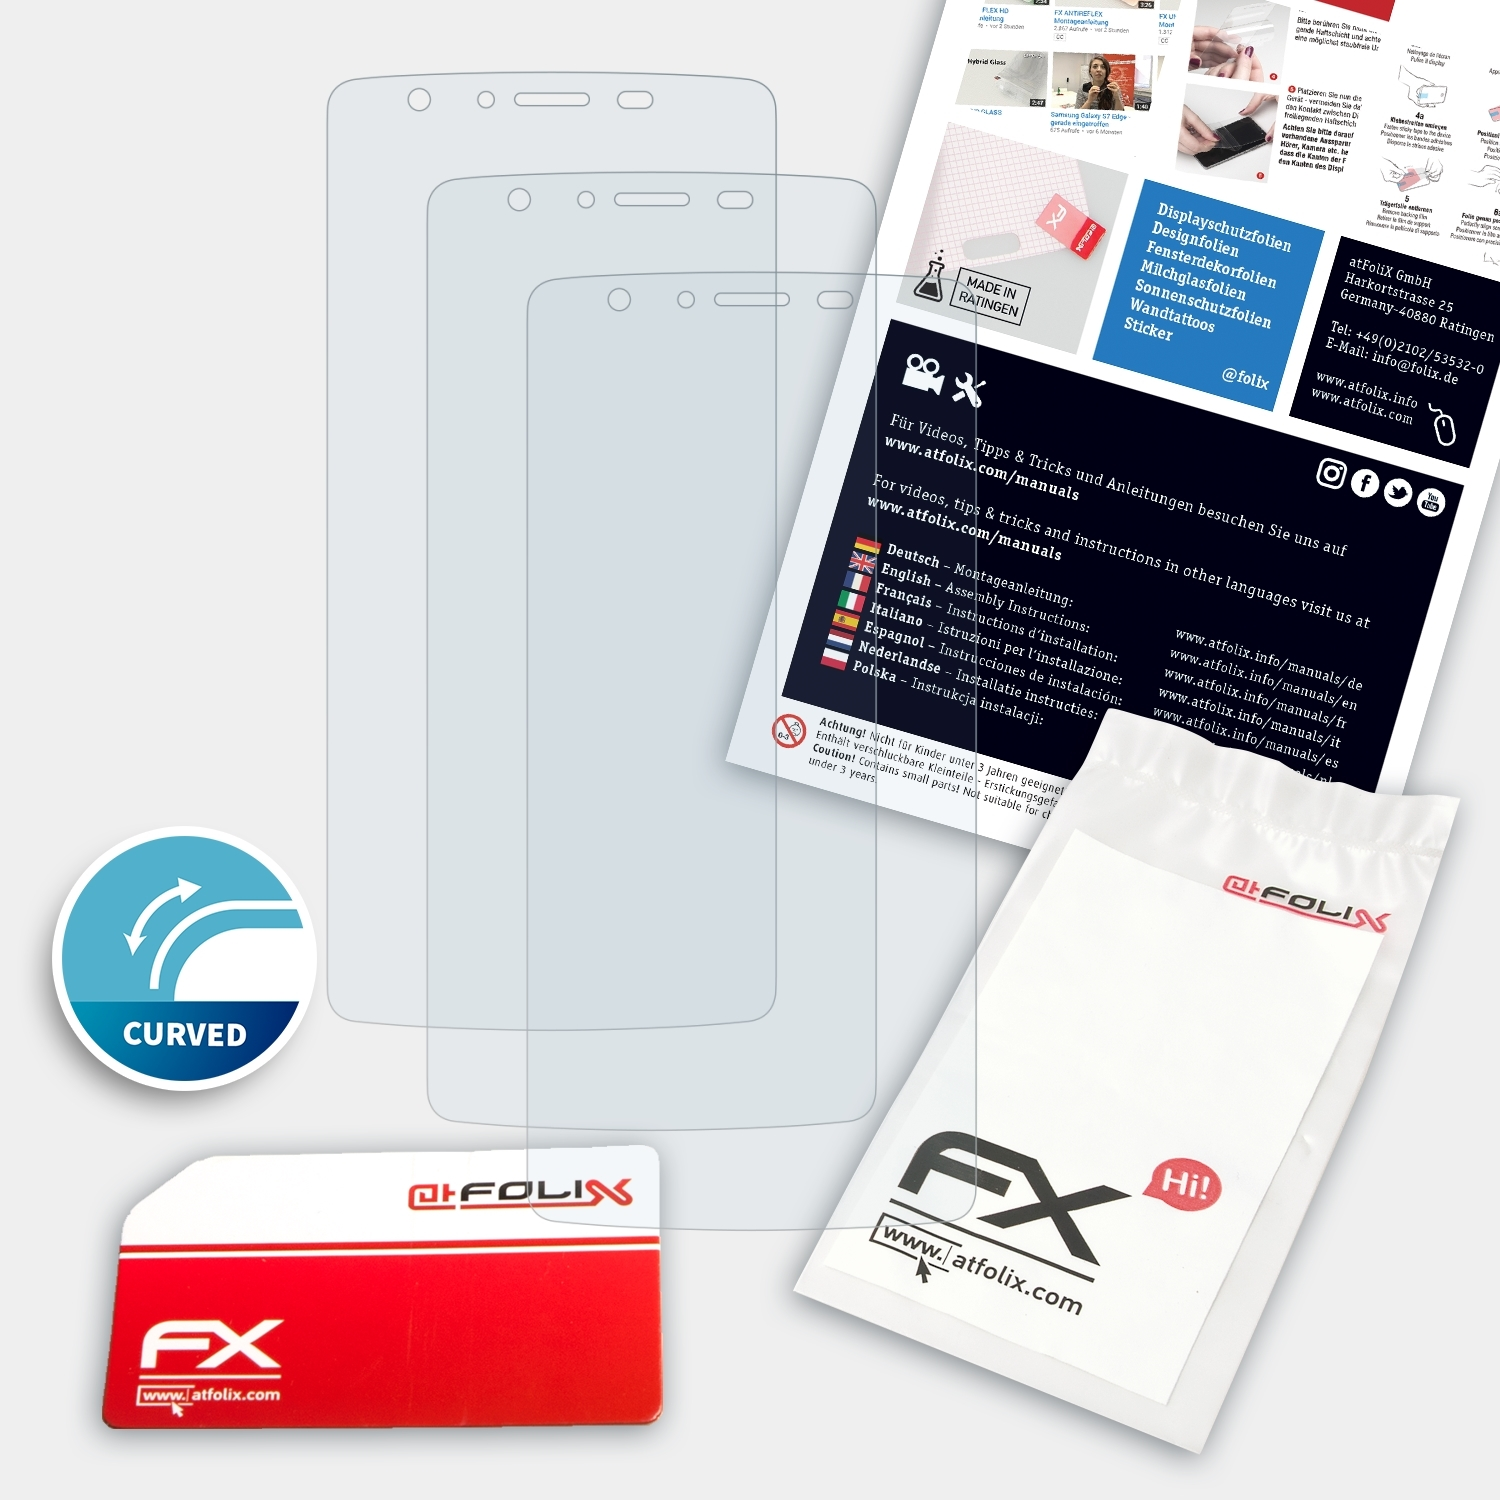 3x Displayschutz(für ATFOLIX FX-ActiFleX Core Noa Fresh 4G)